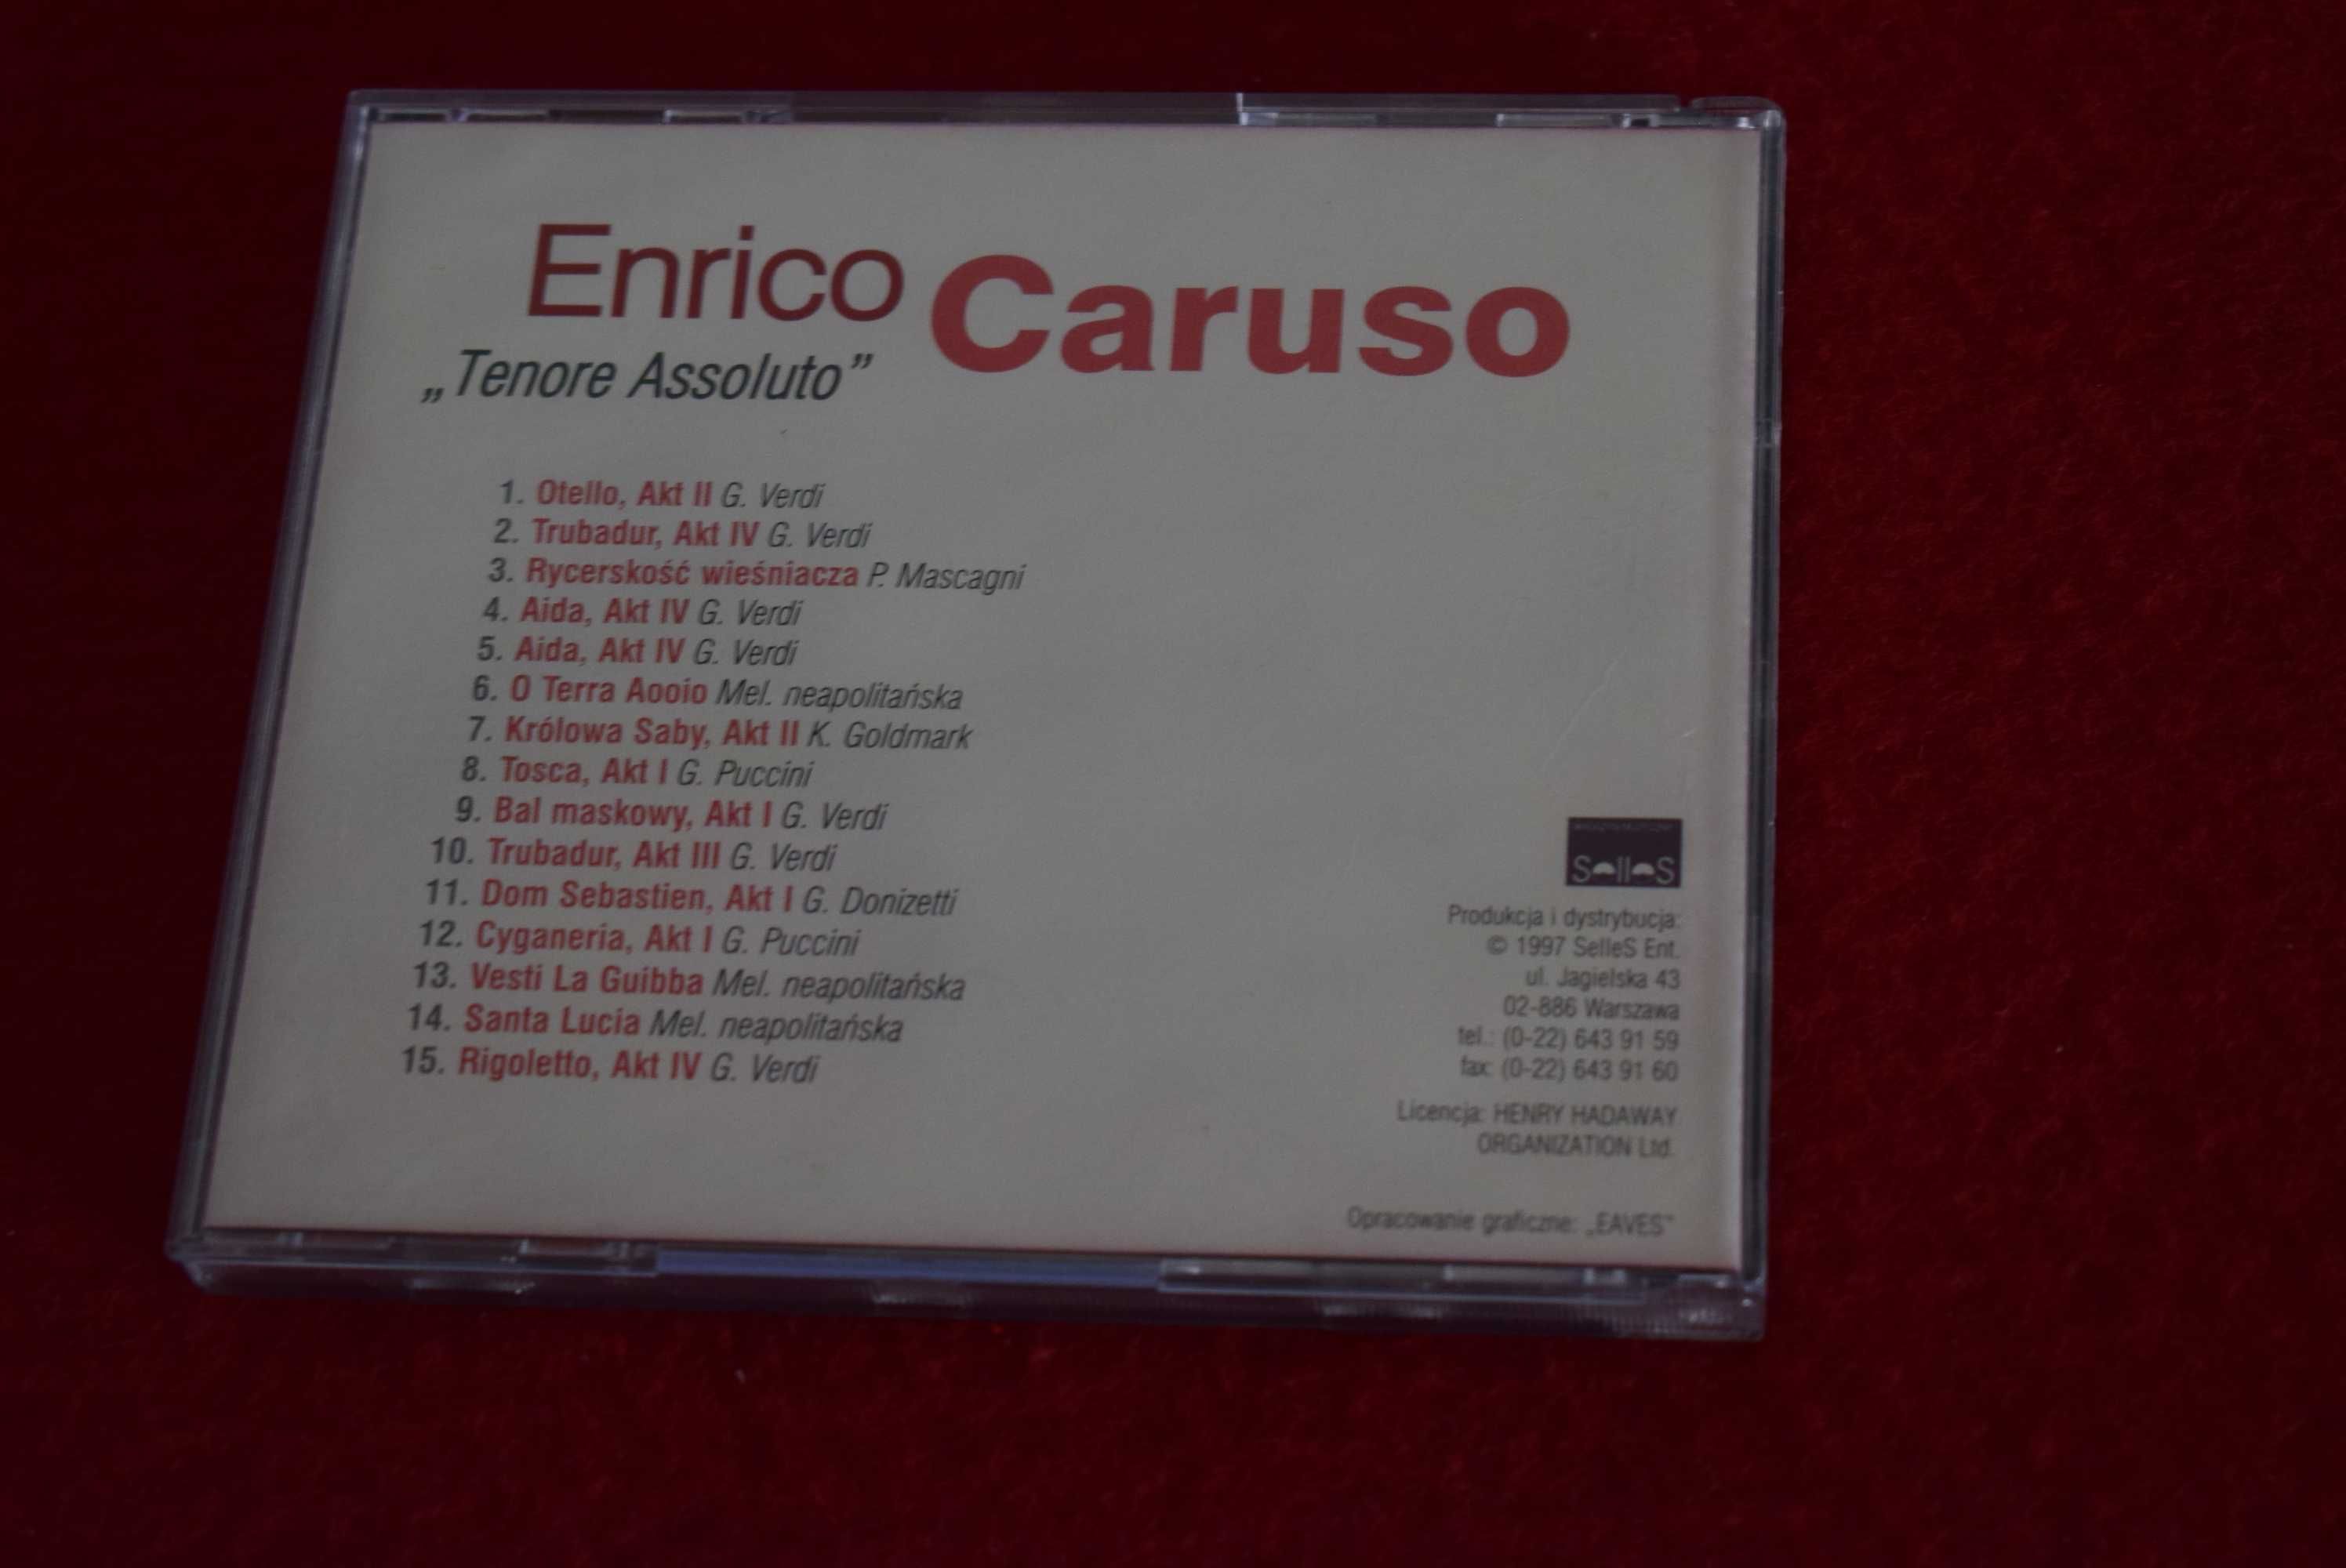 Enrico Caruso - ,,Tenore Assoluto''